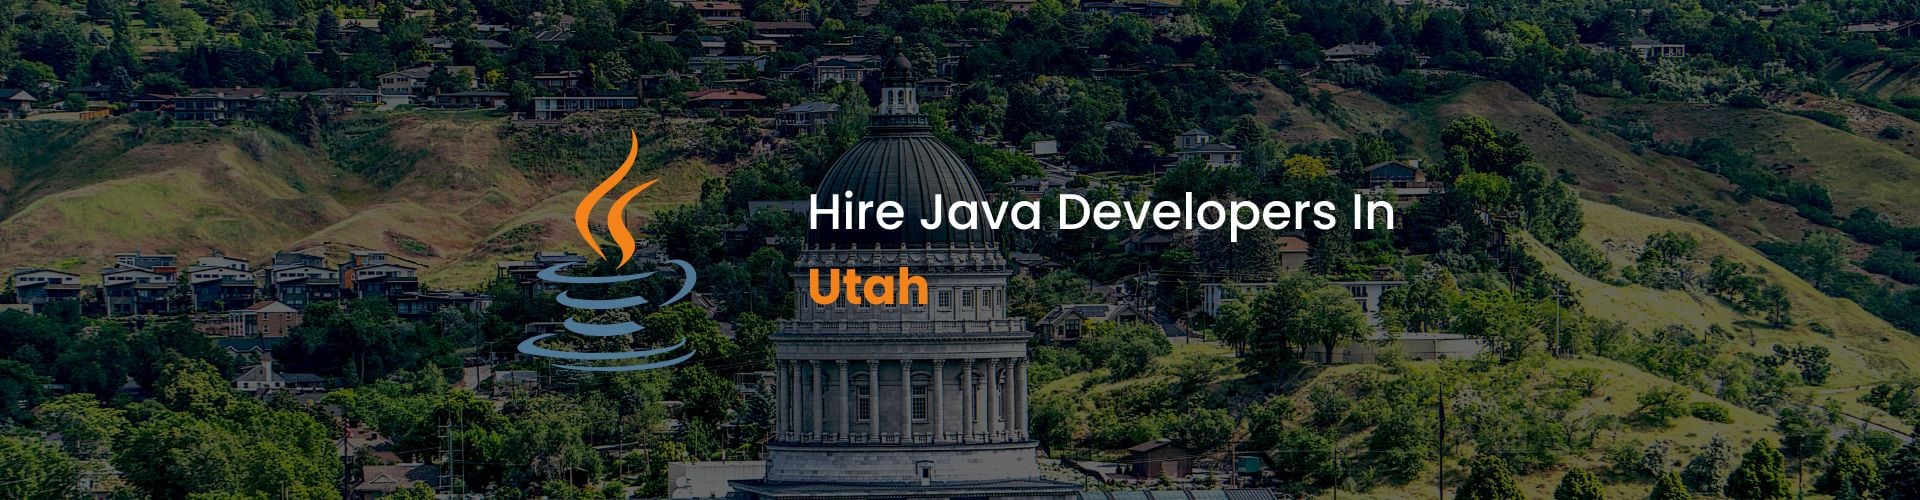 hire java developers in utah